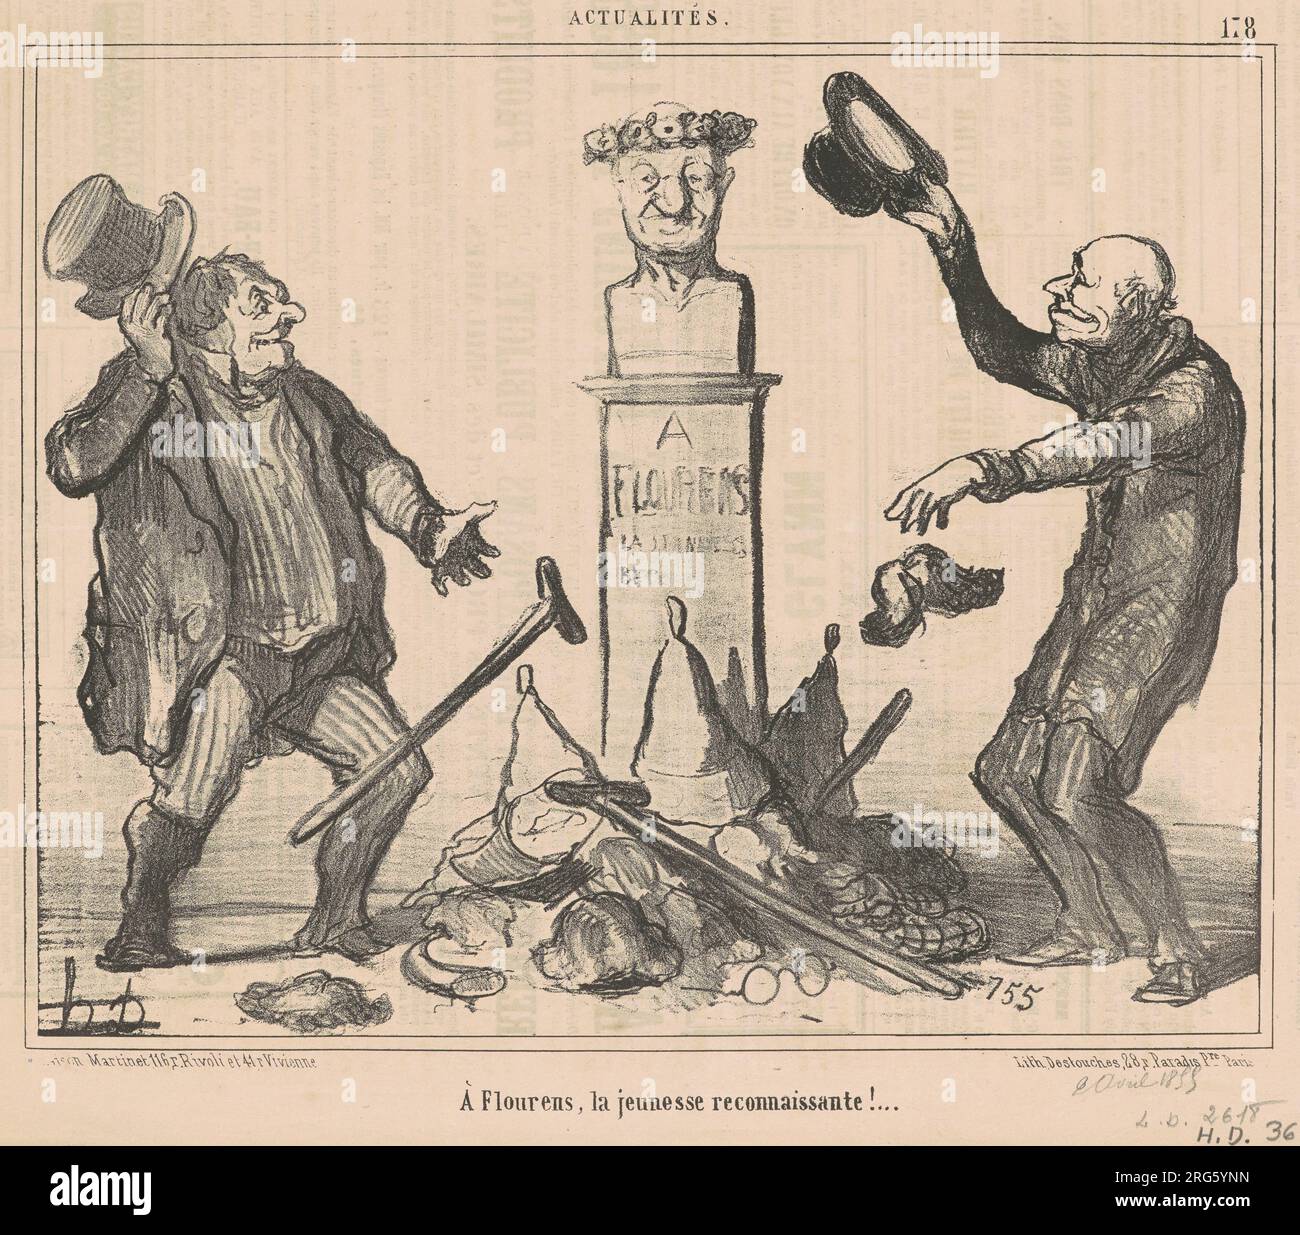 A Flourens, la jeunesse reconnaissante! 19th century by Honoré Daumier Stock Photo